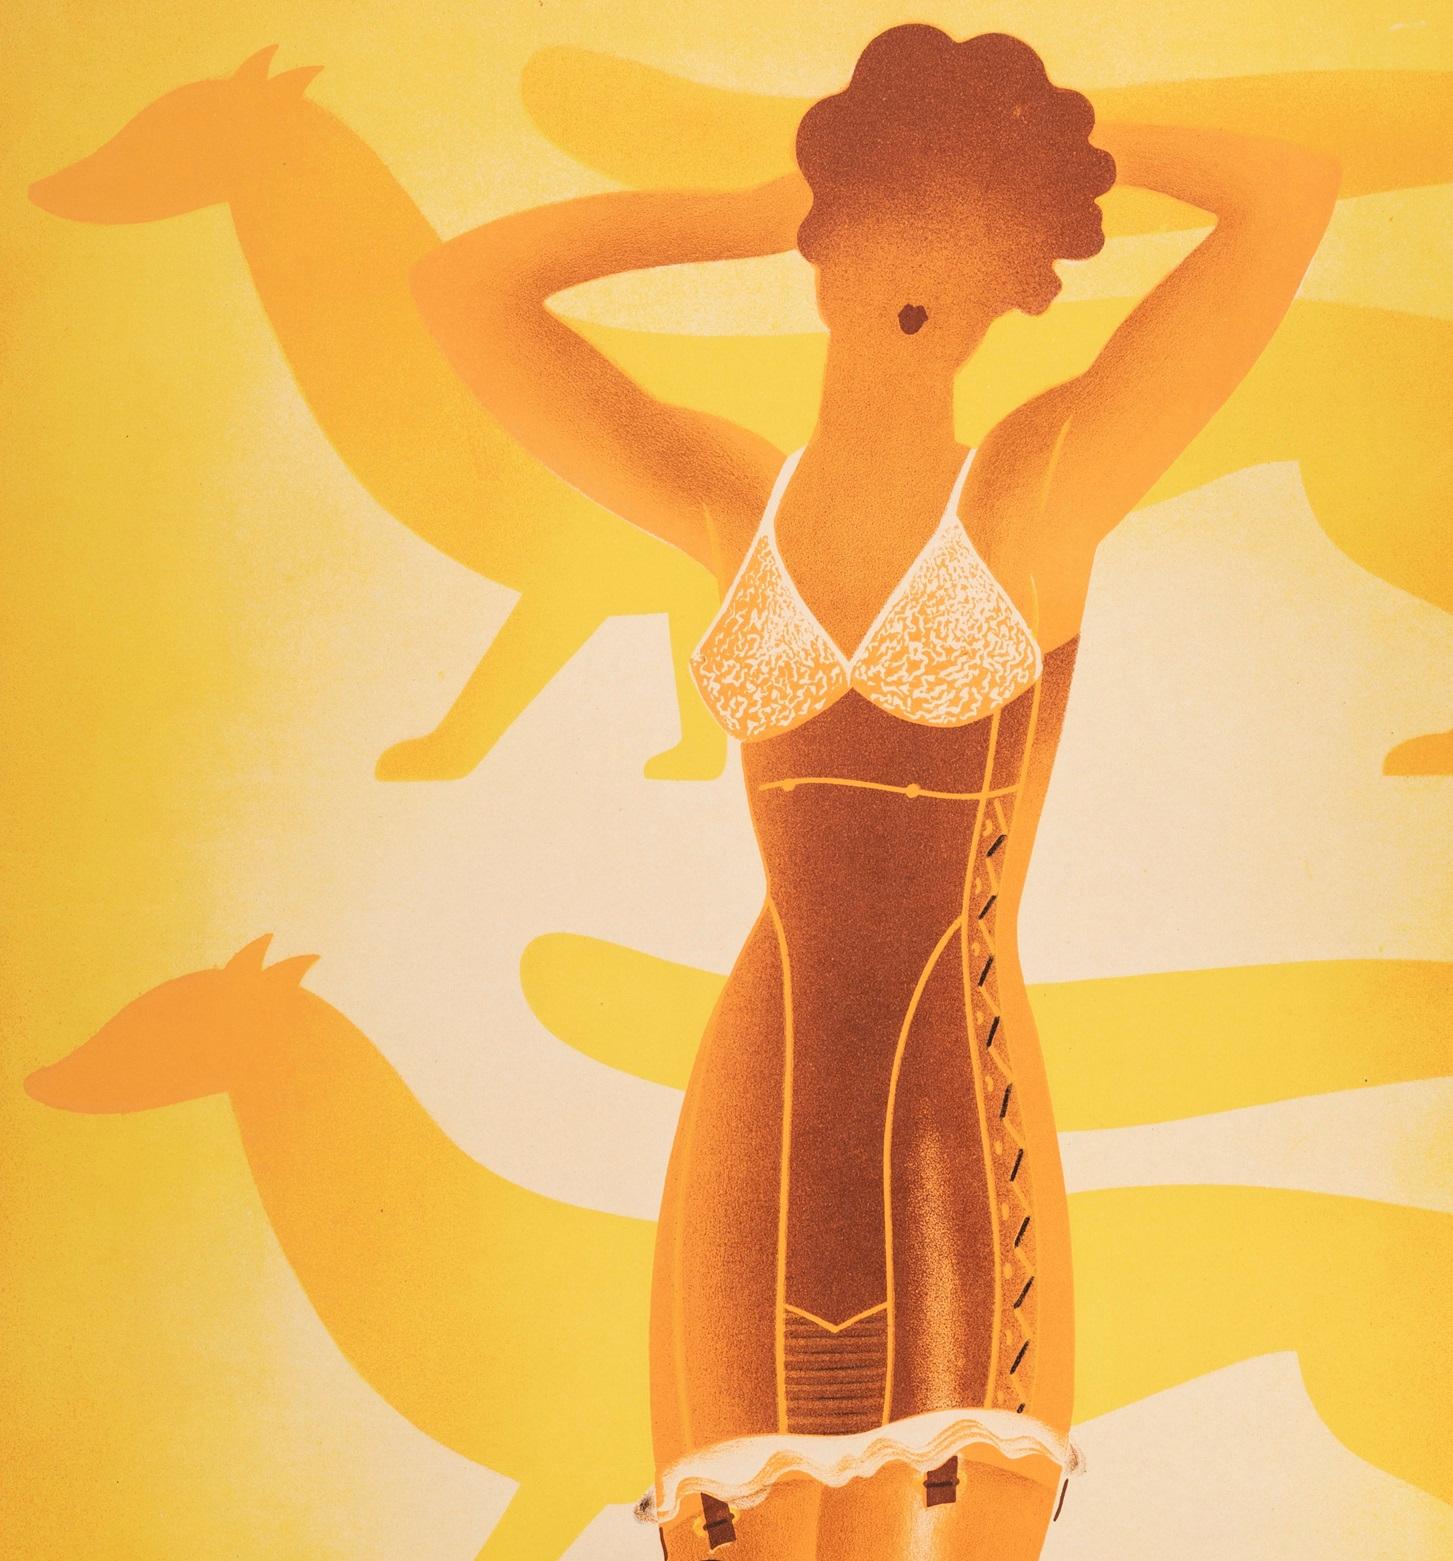 Original Vintage Poster von Roger Perot für Corset lefuret aus dem Jahr 1933.

Künstler: Perot Roger
Titel: Korsetts Le Furet - Le rêve de la femme
Datum: 1933
Größe: 39,4 x 54,7 Zoll / 100 x 139 cm
Drucker: Etablt Delattre, 18 rue le Bua,